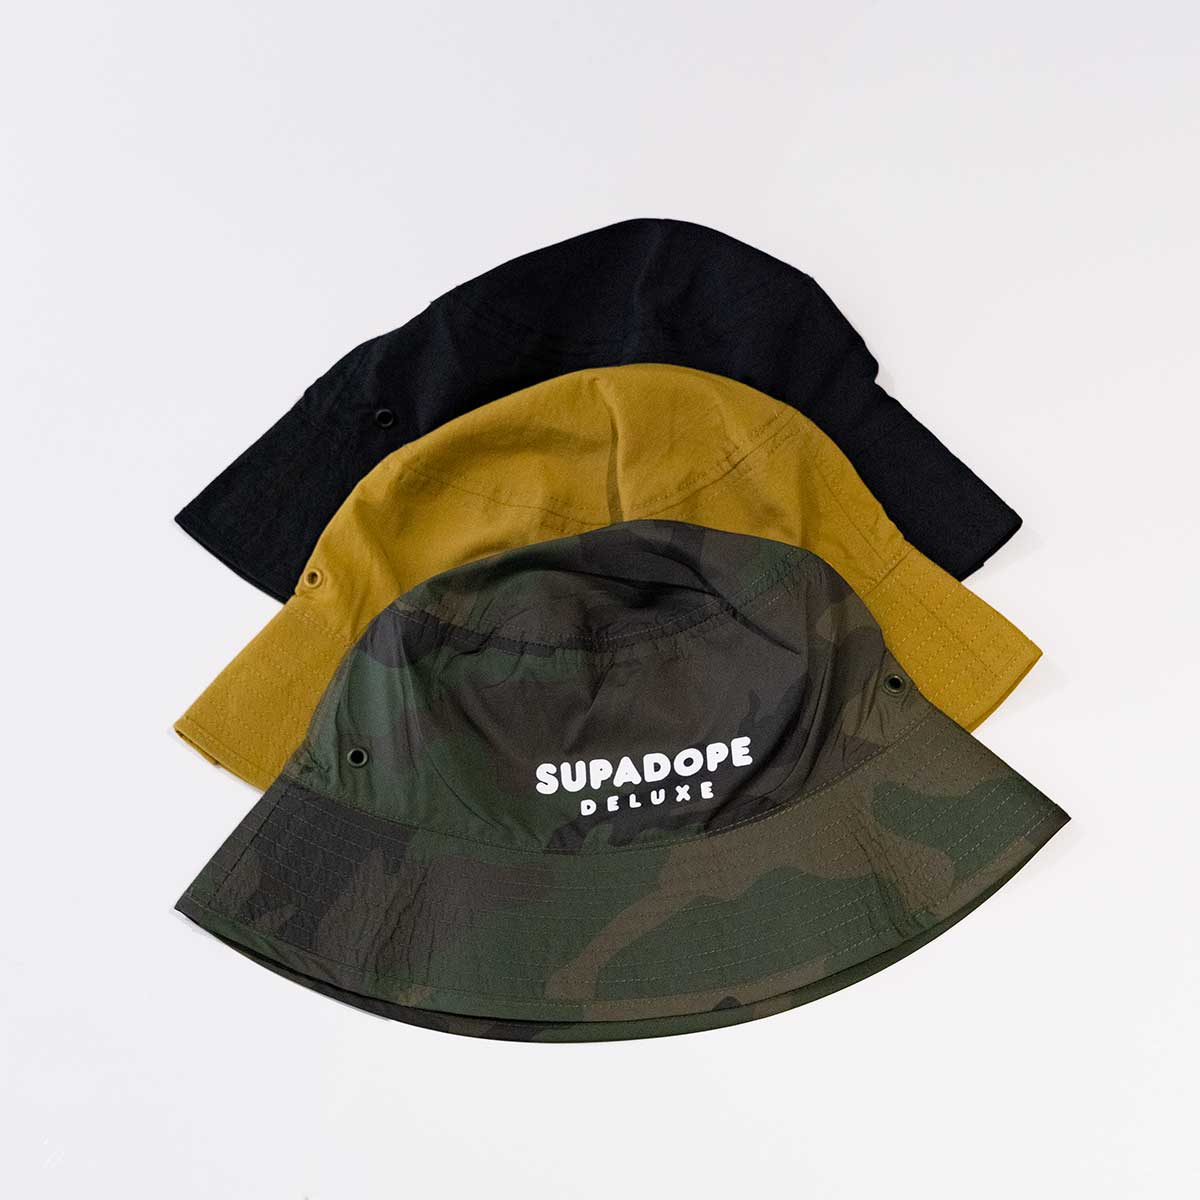 SUPADOPE DELUXE - Bucket Hat - Camo, Black or Olive